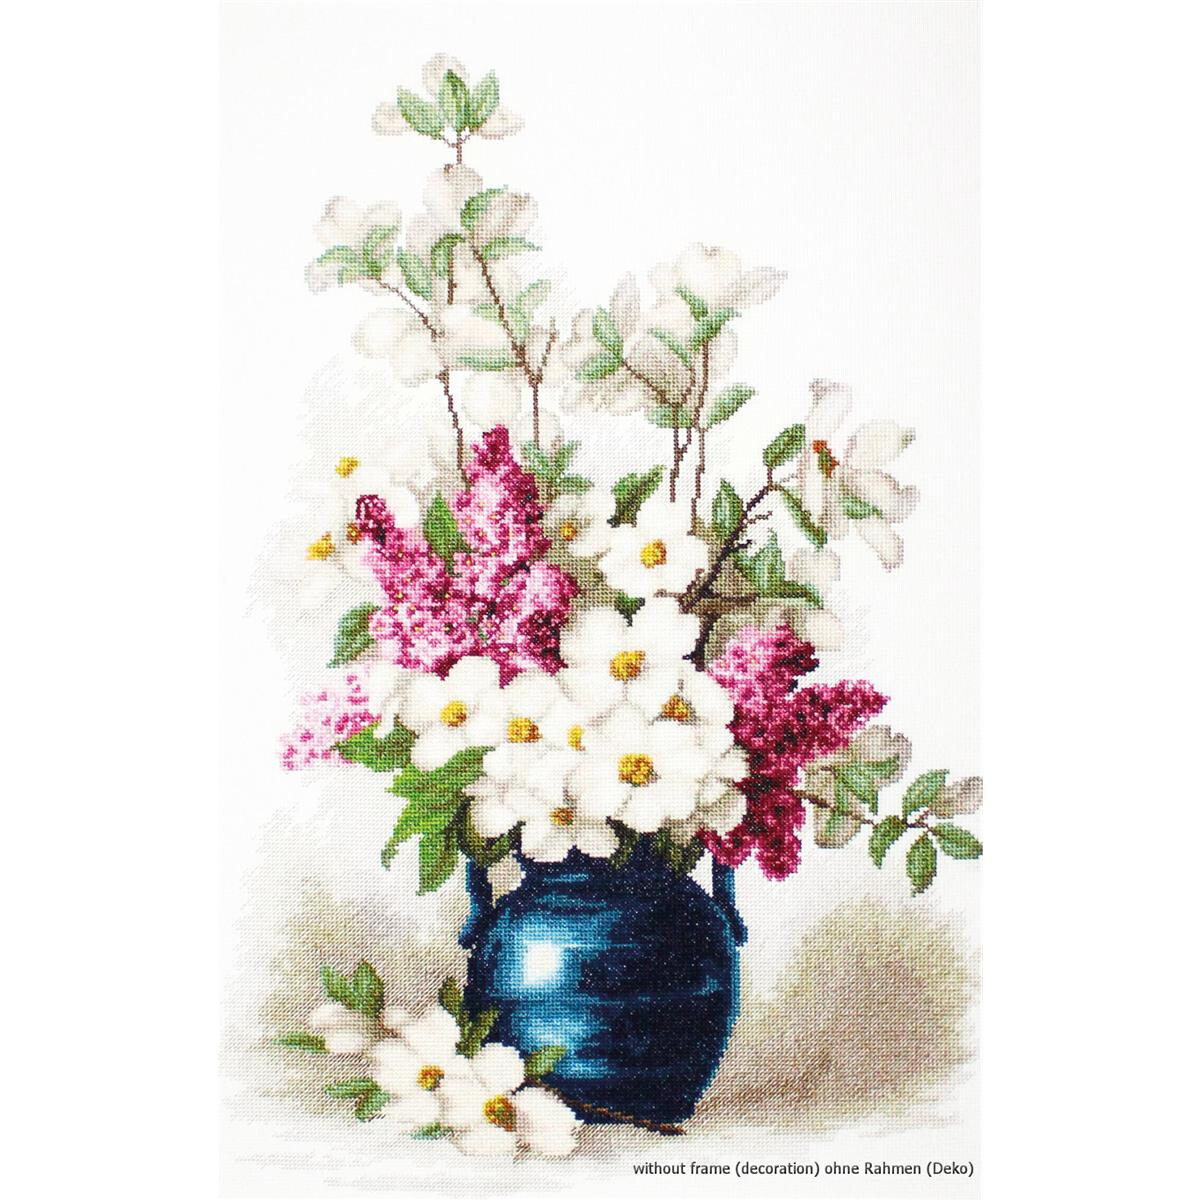 Una vivace natura morta mostra un vaso blu pieno di fiori...